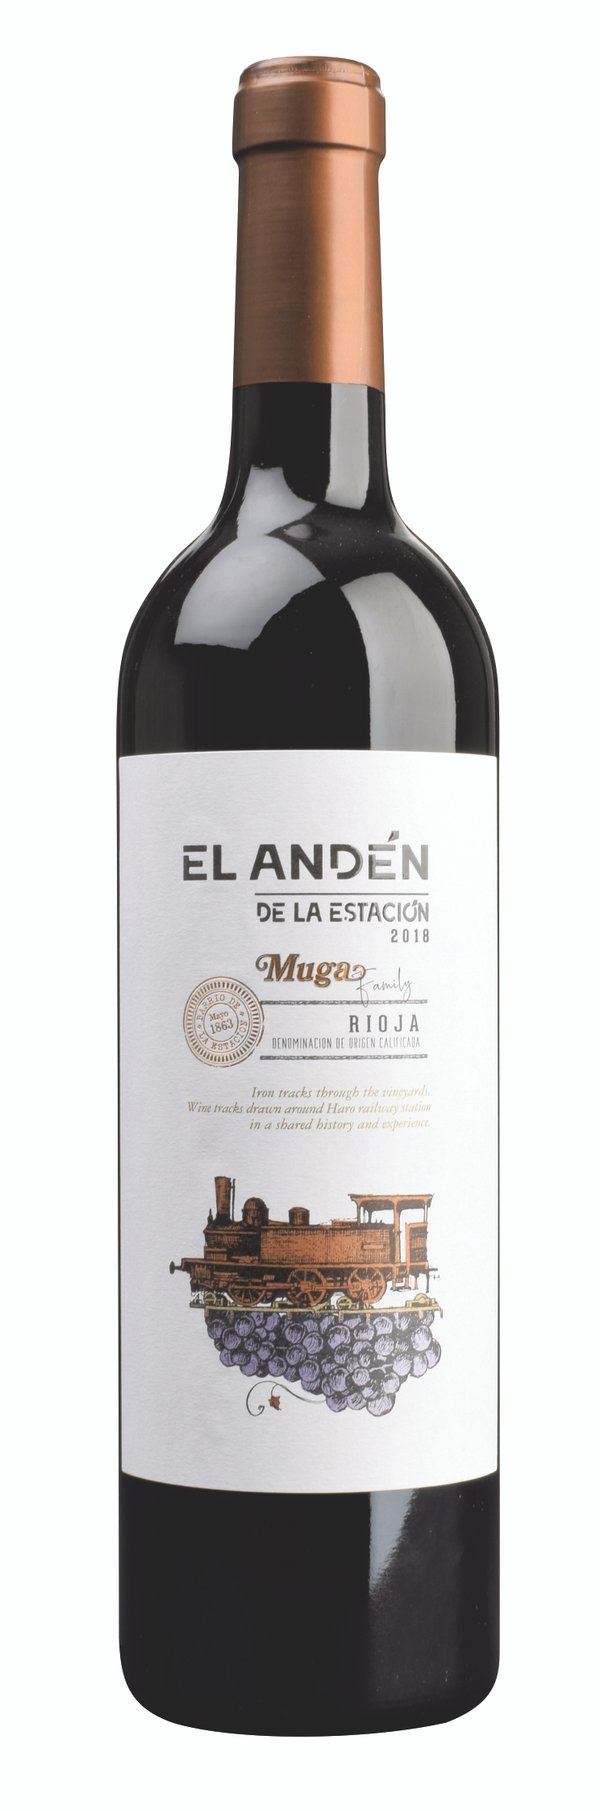 Rioja "EL ANDÉN" de la Estación 2018 Bodegas Muga 